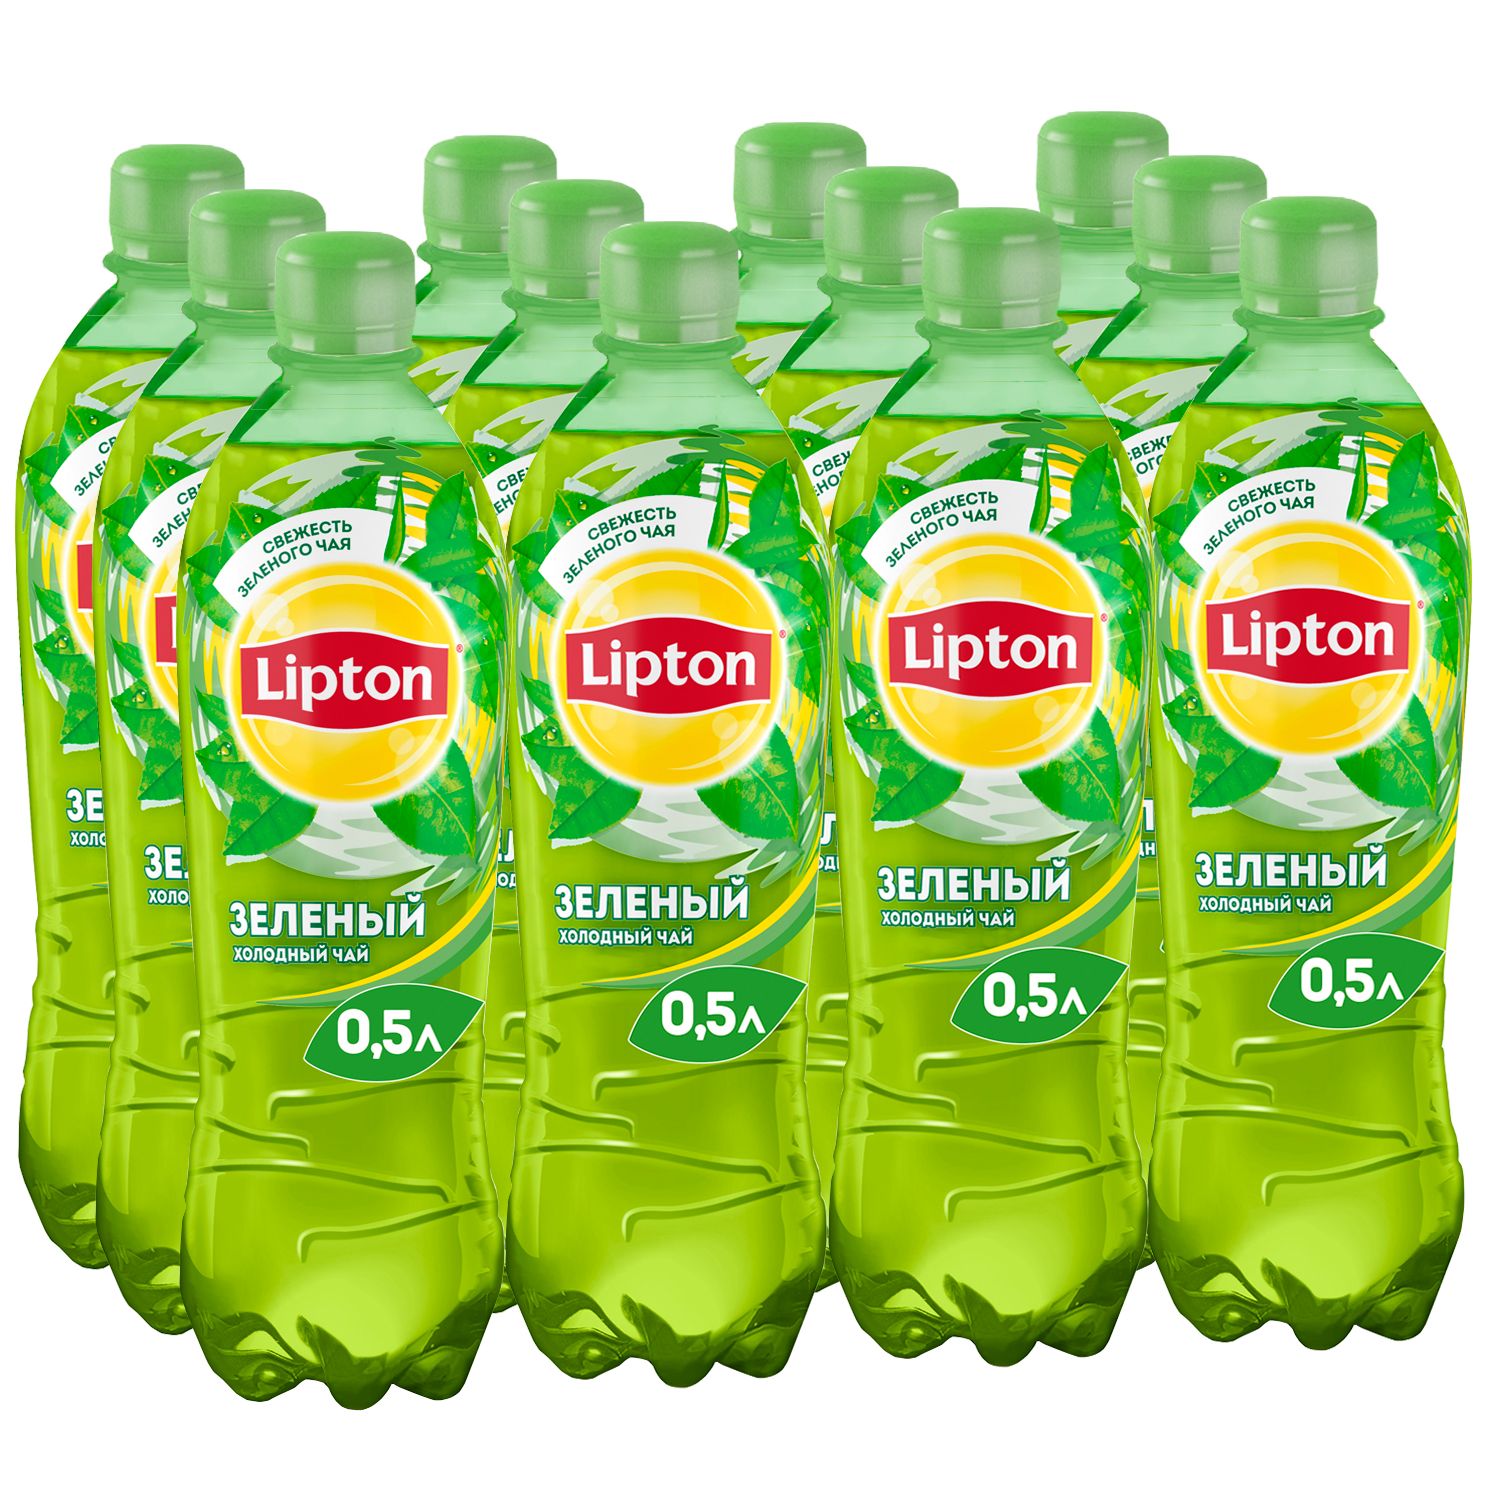 Липтон зеленый бутылка. Липтон 0,5 зеленый. Липтон зеленый чай 0.5. Липтон зелёный холодный чай. Зеленый Липтон зеленый Липтон.